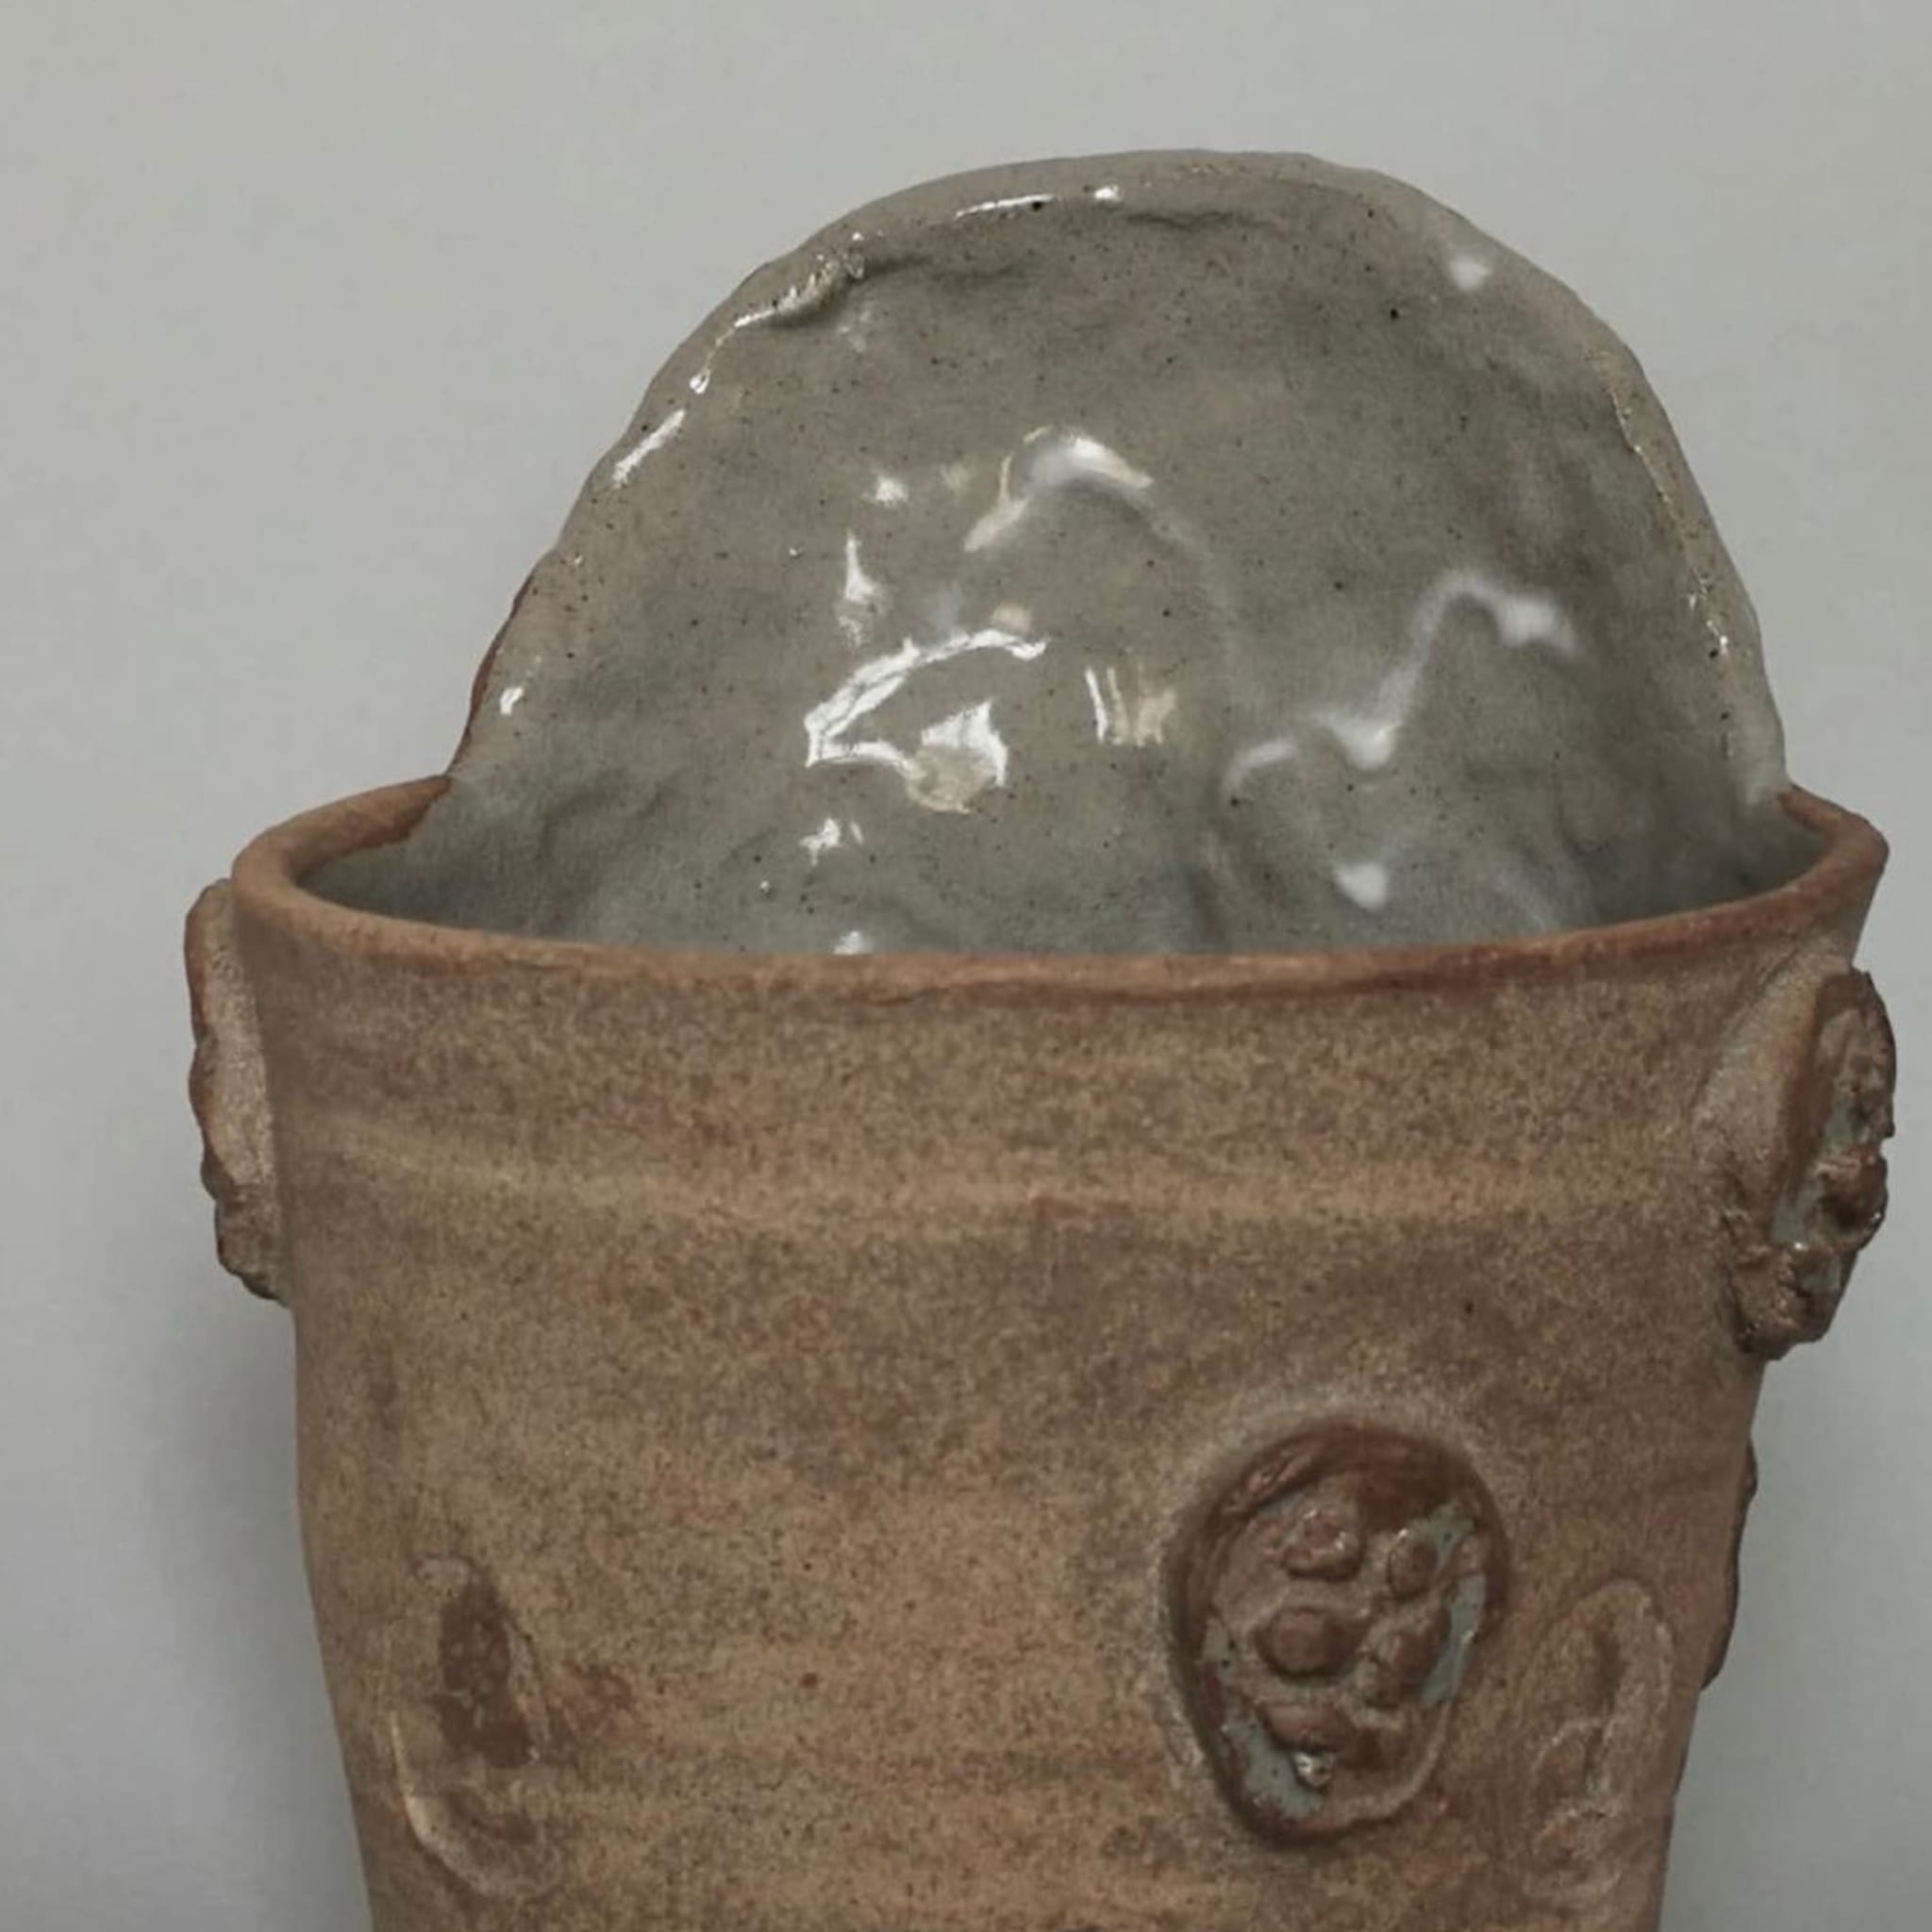 Maschera III Sculptural Vase - Alternative view 1